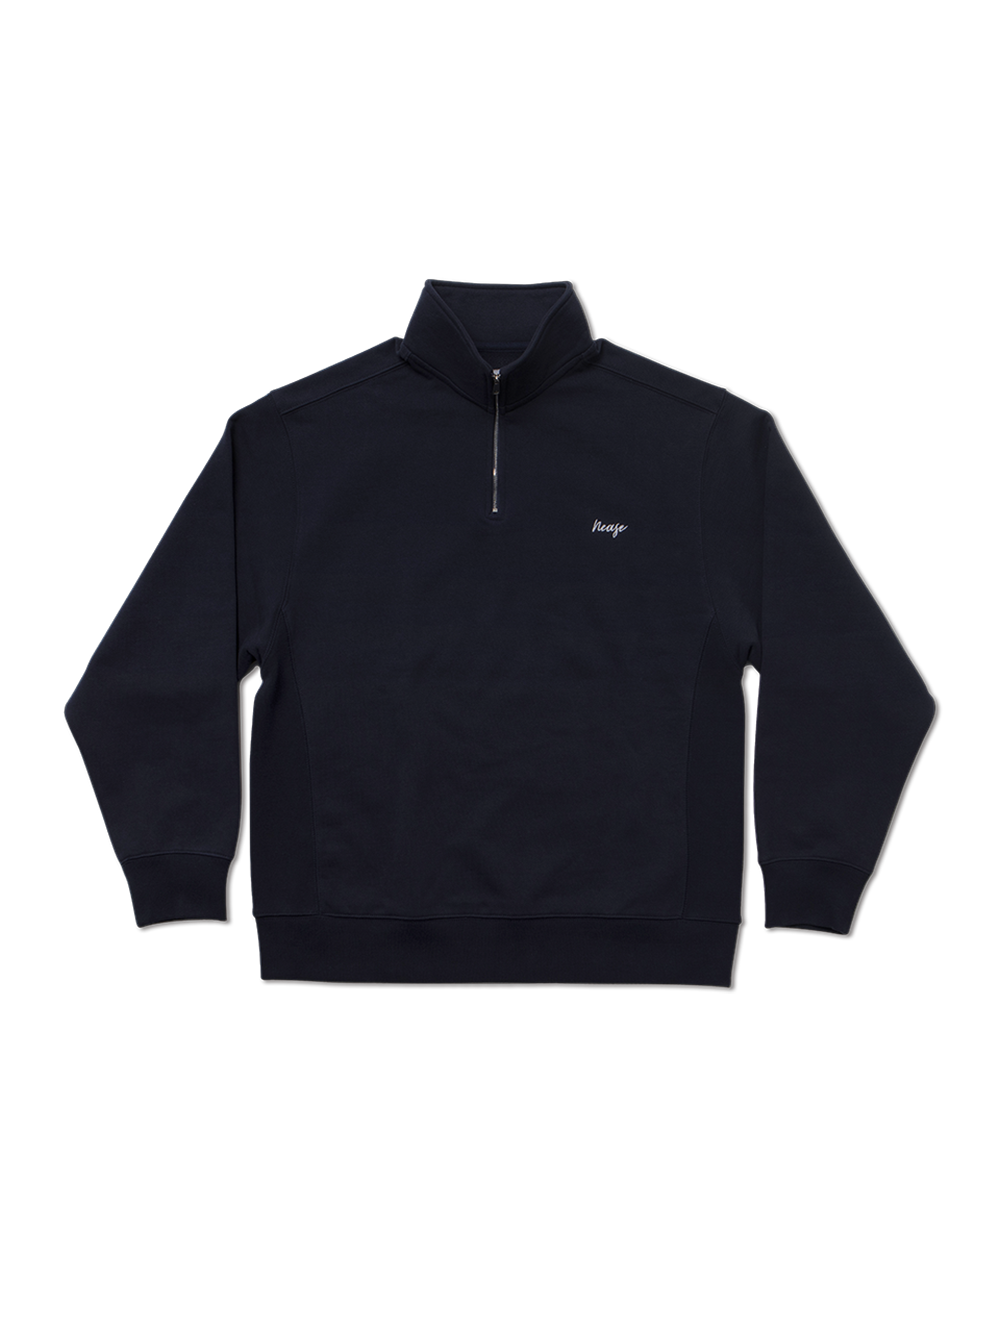 NEASE basic logo half-zip sweatshirt